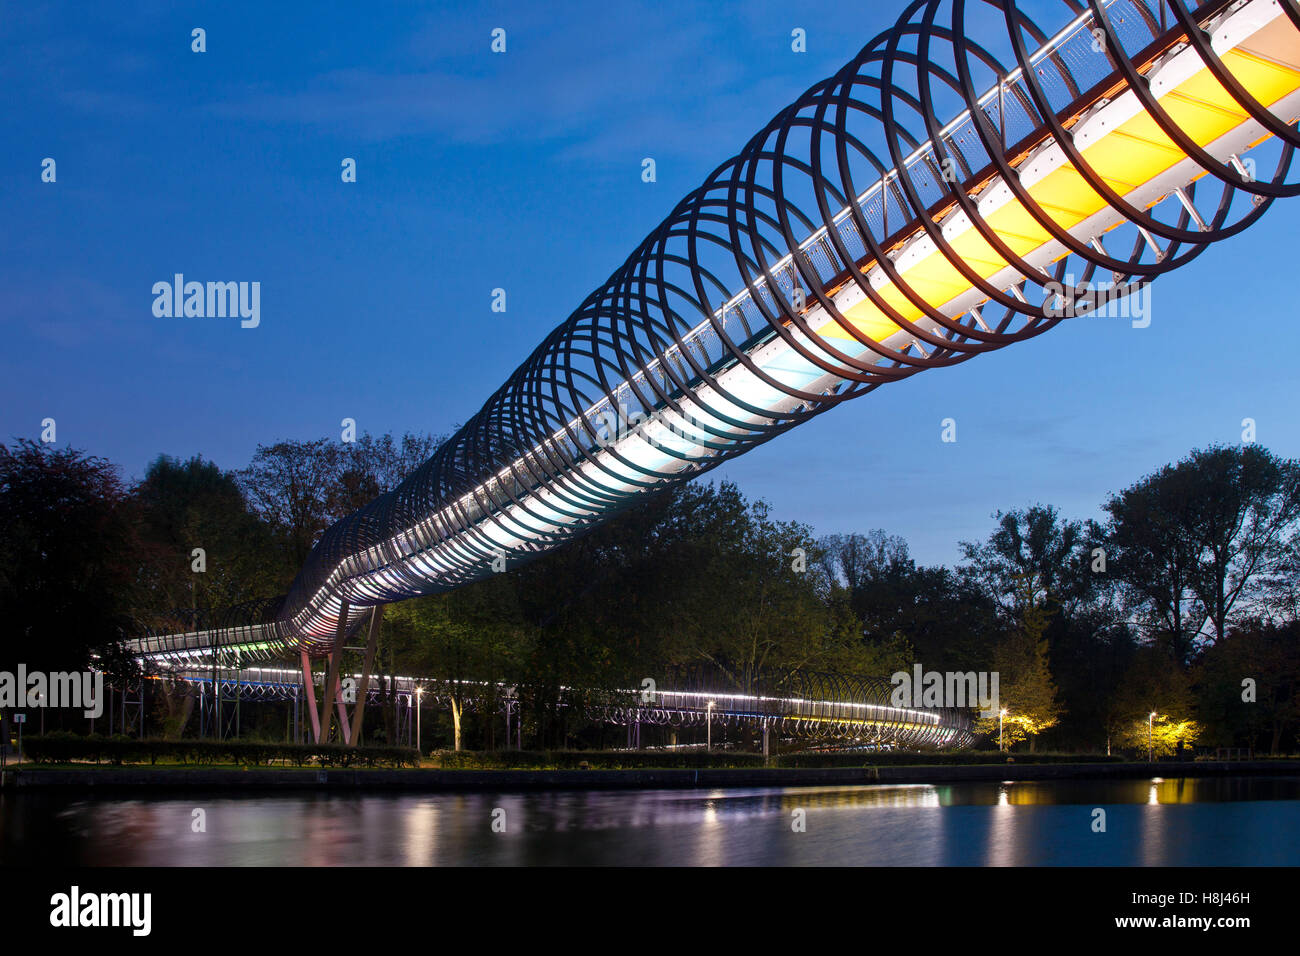 Allemagne, Oberhausen, pont piétonnier éclairé Slinky ressorts pour Fame également nommé pont canal Rhein-Herne Rehberger Banque D'Images